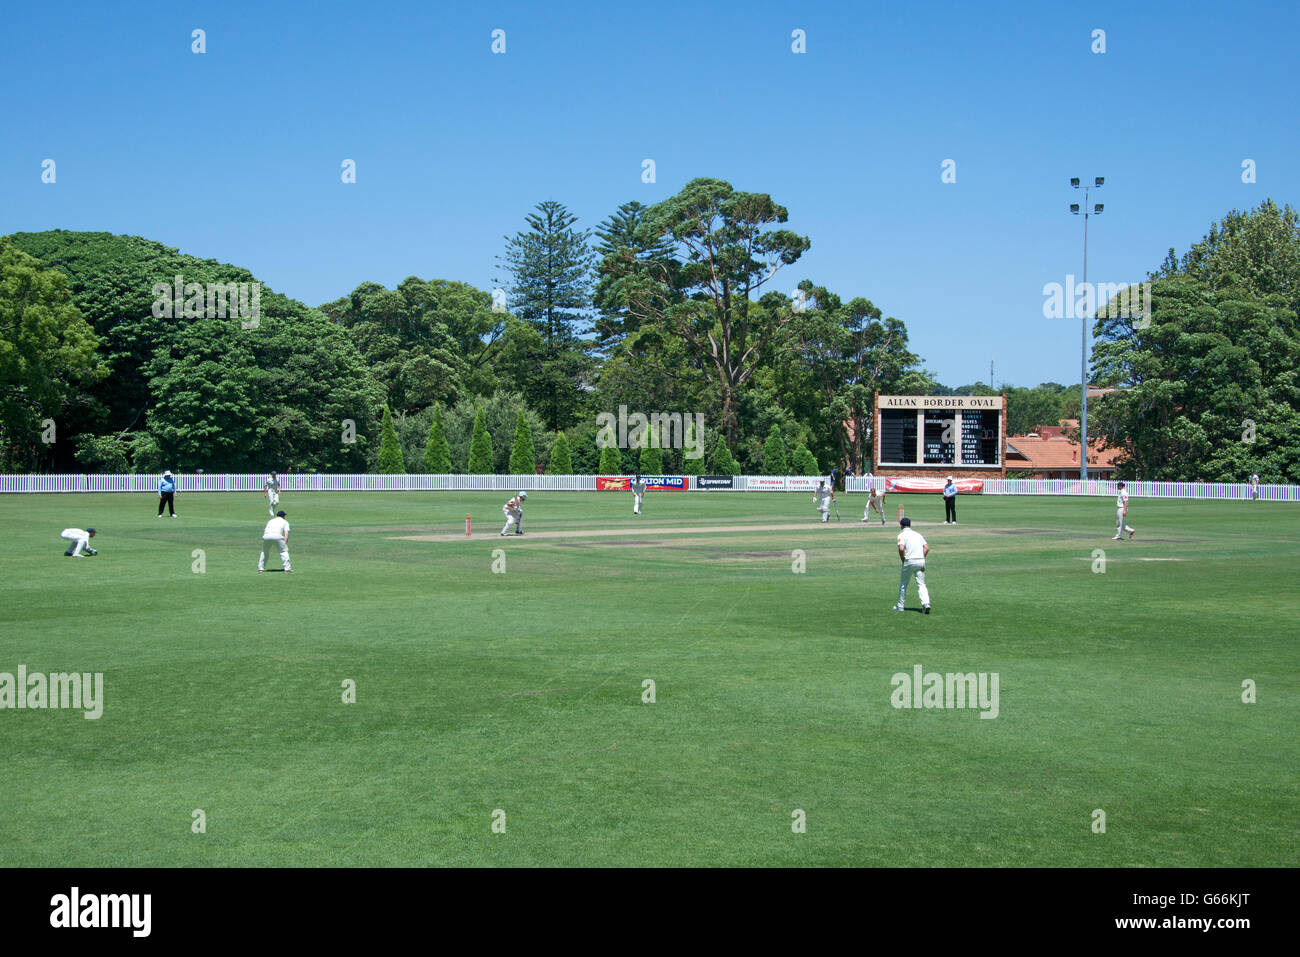 Alan match de cricket ovale frontière Mosman NSW Australie Sydney Banque D'Images